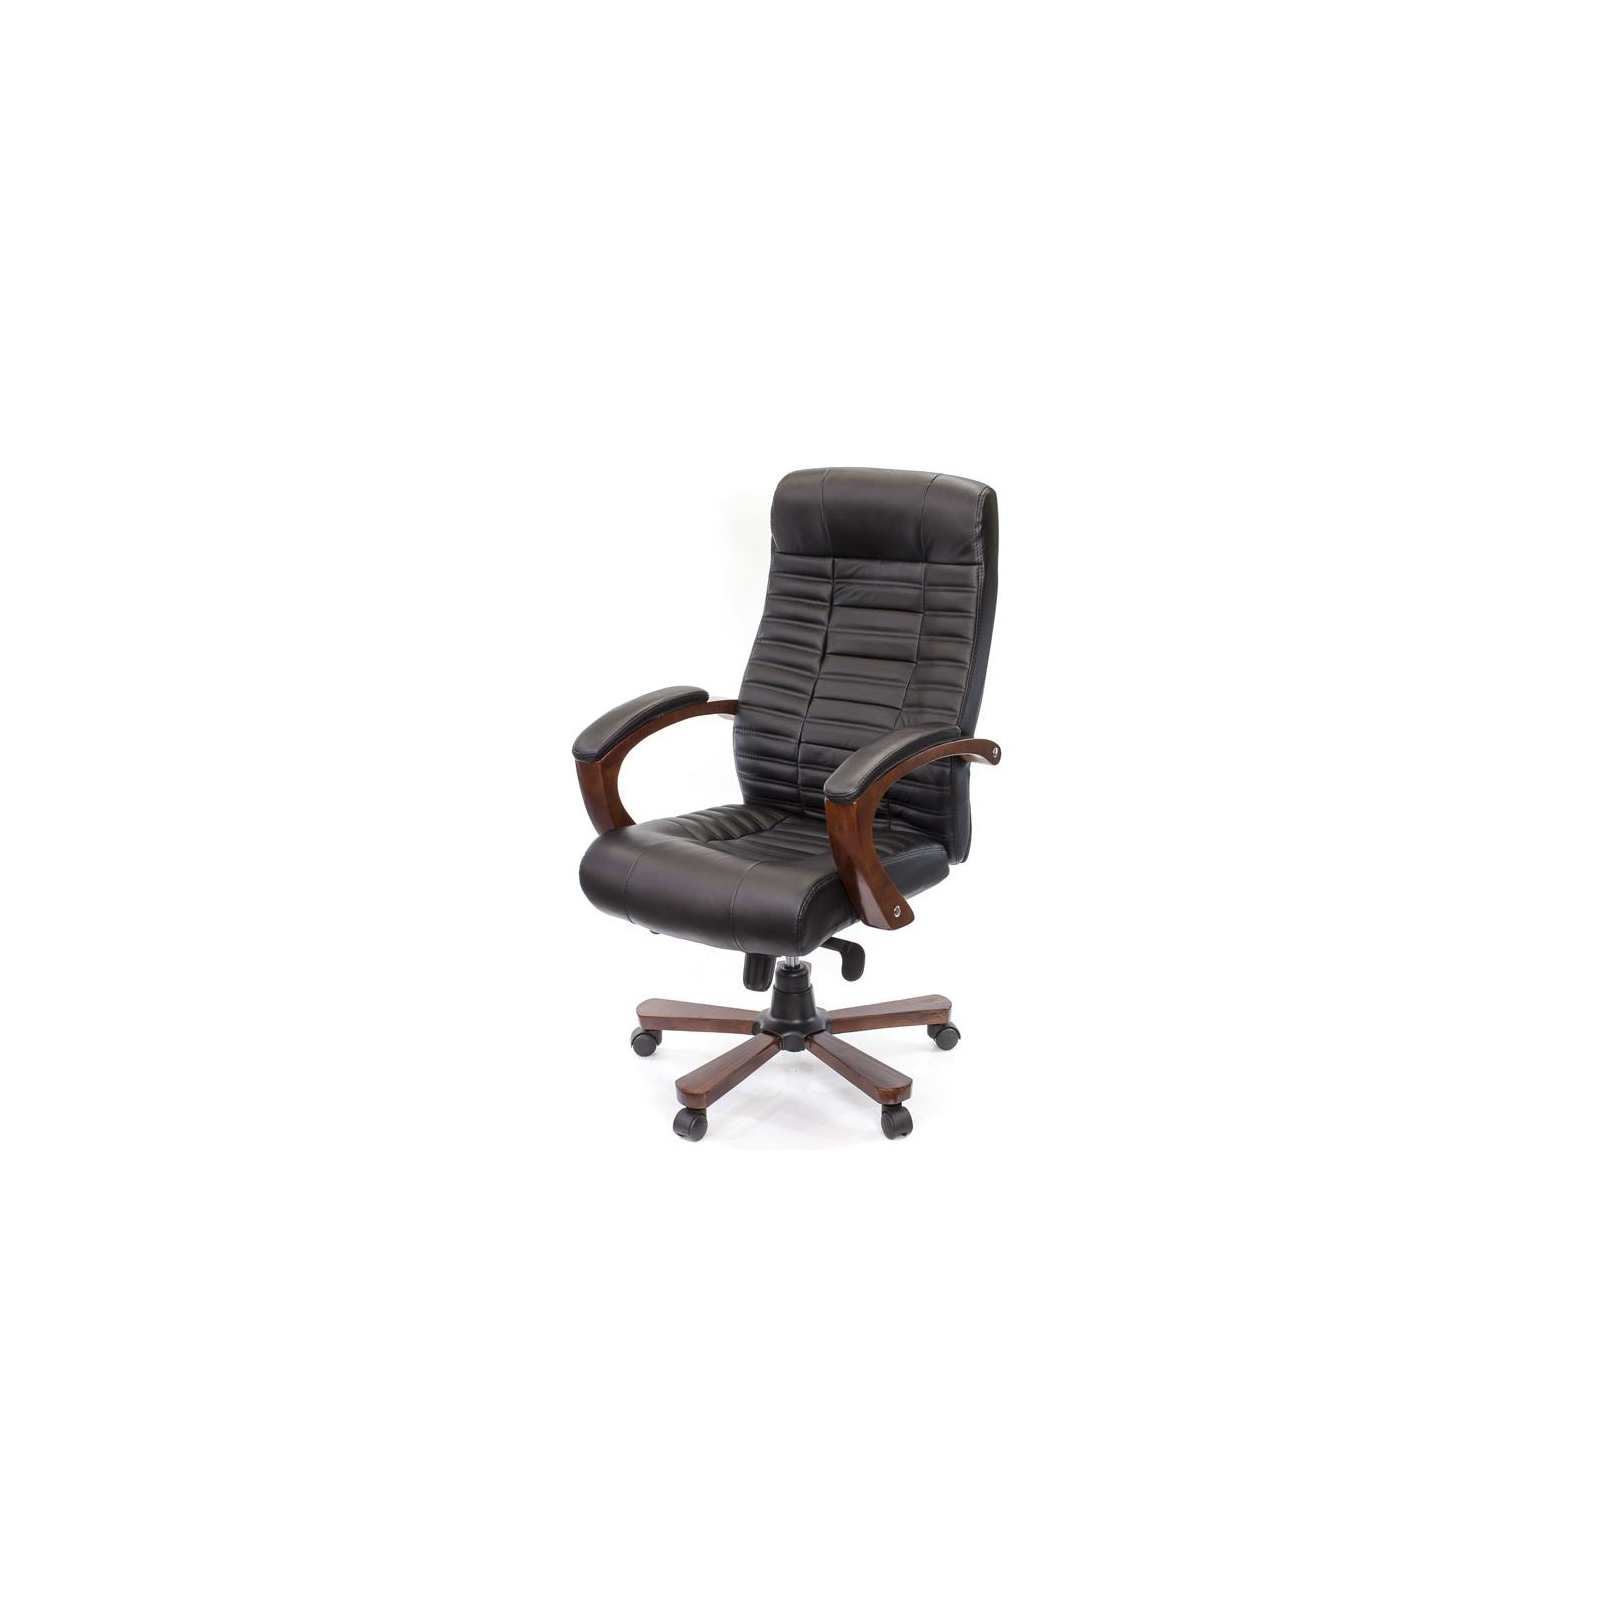 Офисное кресло Аклас Атлант EX MB Коричневое (09639)